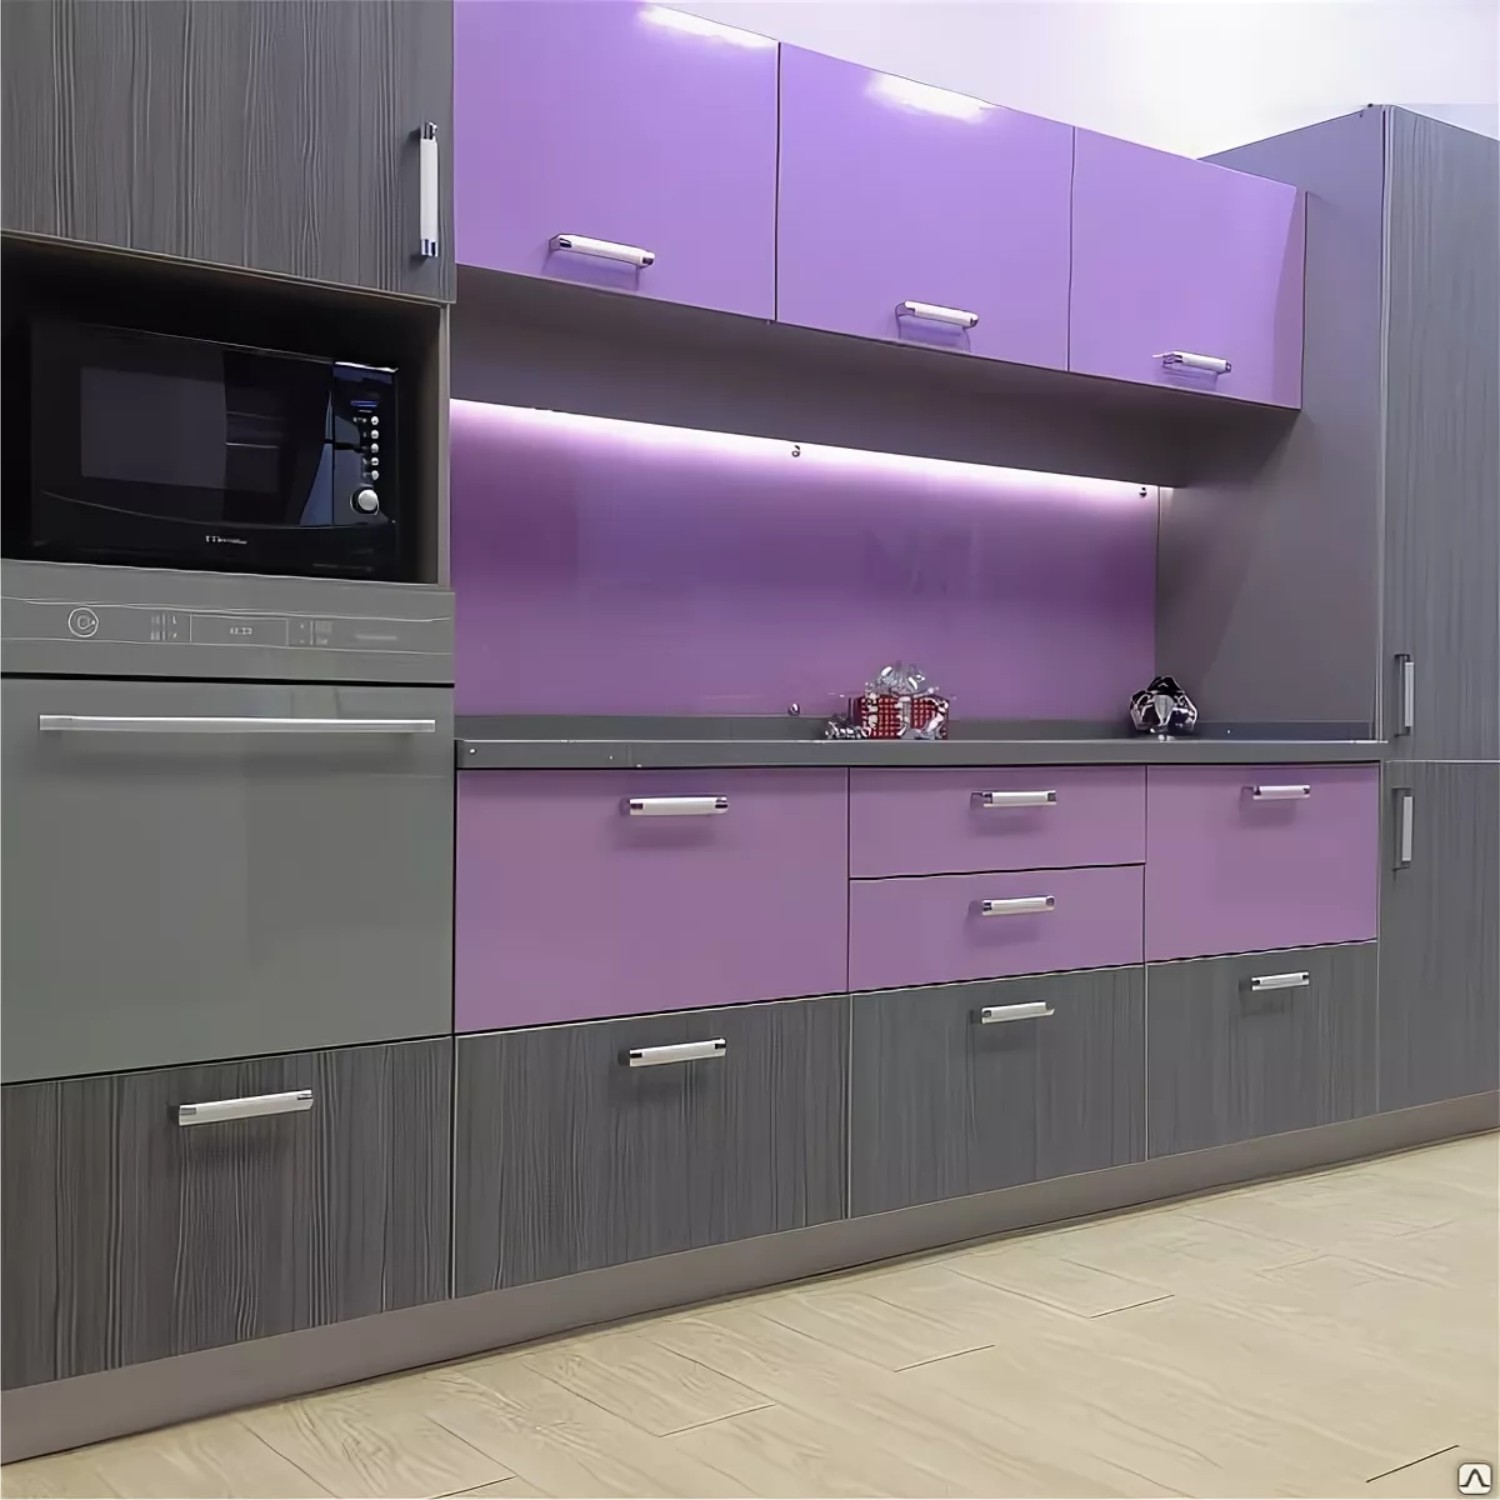 кухня лавандового цвета в современном стиле